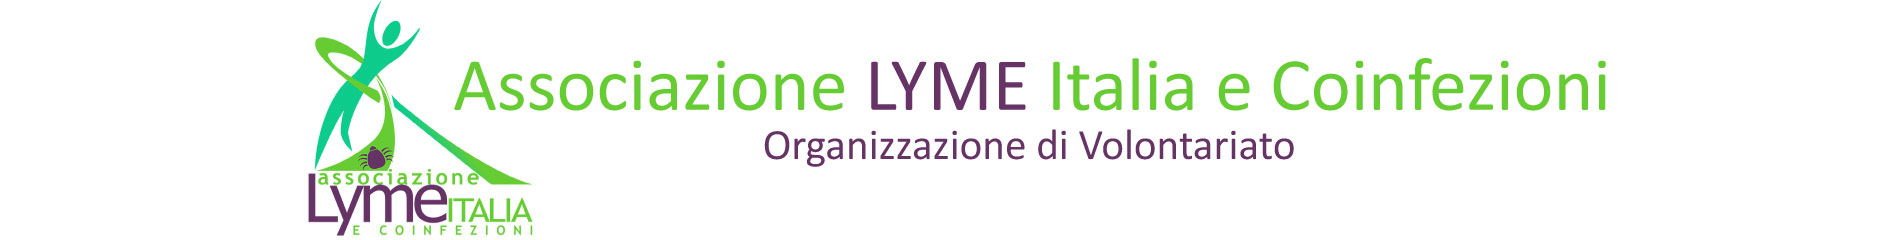 Associazione Lyme Italia e Coinfezioni